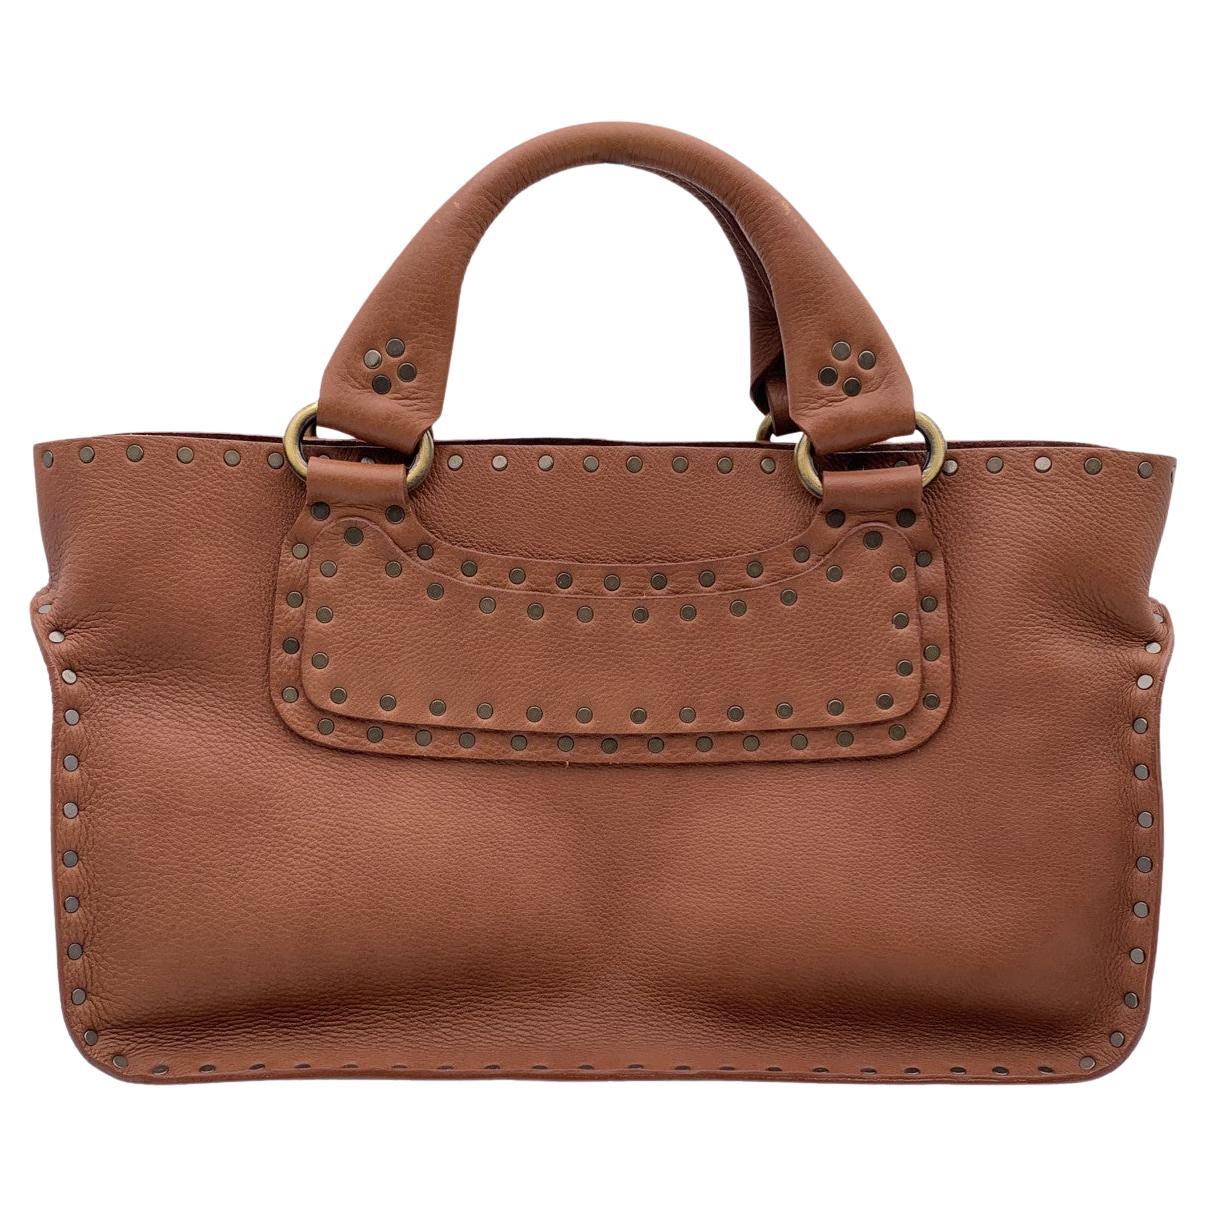 Celine Brown Leather Studded Boogie Bag Satchel Tote Handbag